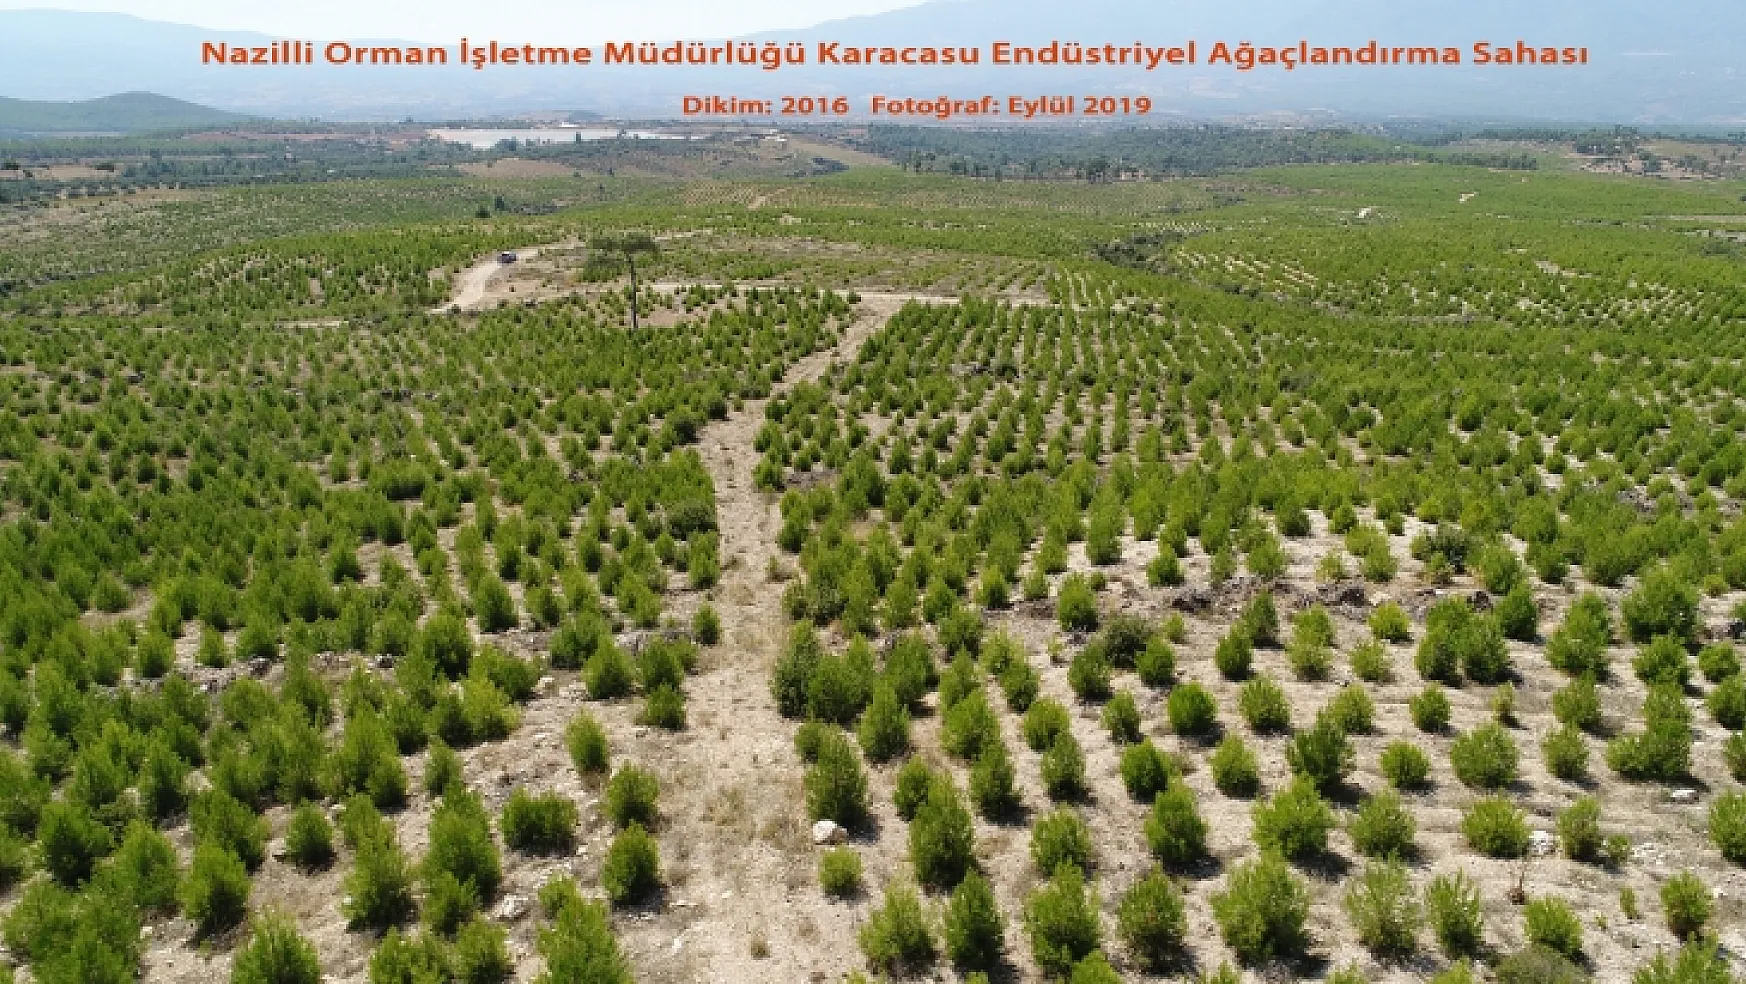 Muğla'da Endüstriyel Ağaçlandırma çalışmaları başladı 